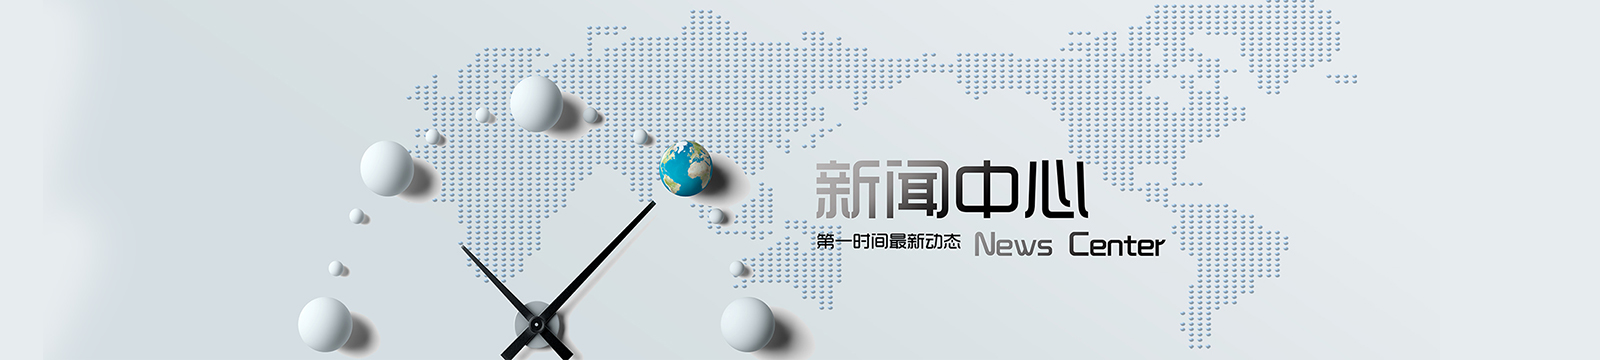 浩通國際貨運代理有限公司,科技，網站，UI